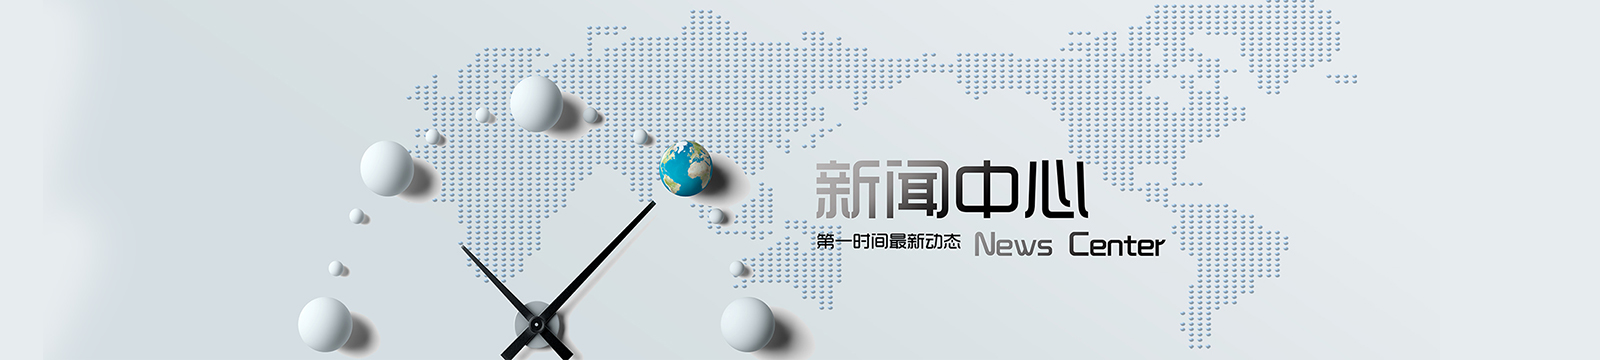 浩通國際貨運代理有限公司,科技，網站，UI